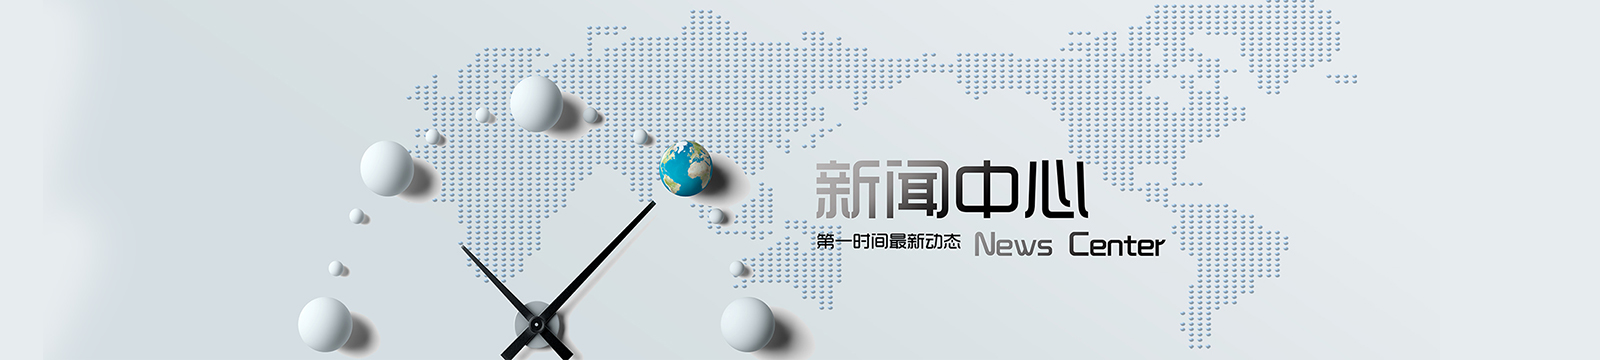 浩通國際貨運代理有限公司,科技，網站，UI